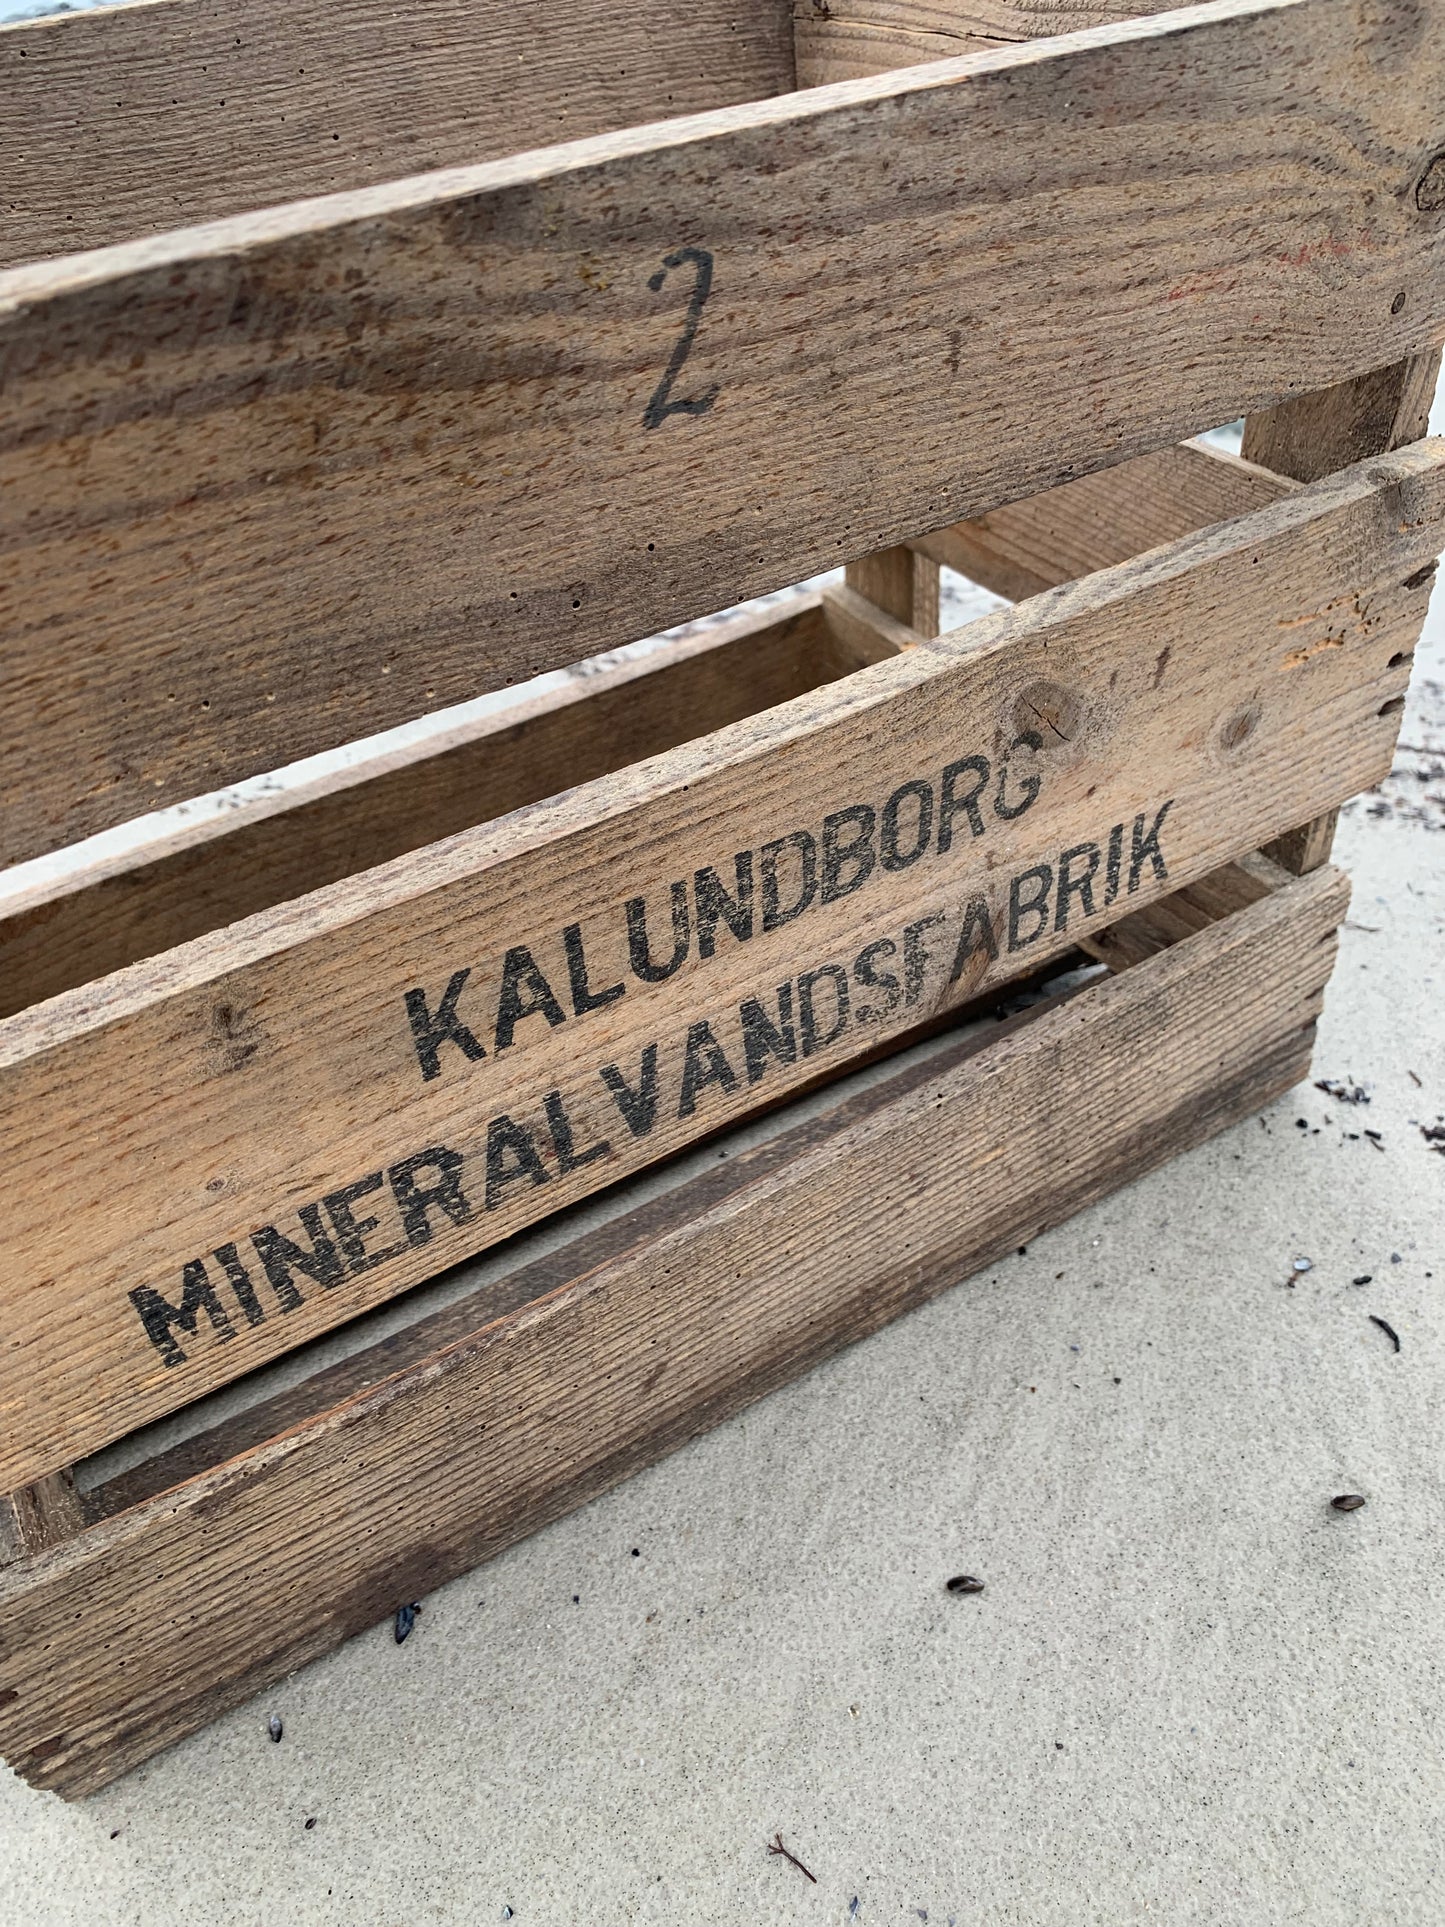 Box aus der Mineralwasserfabrik Kalundborg